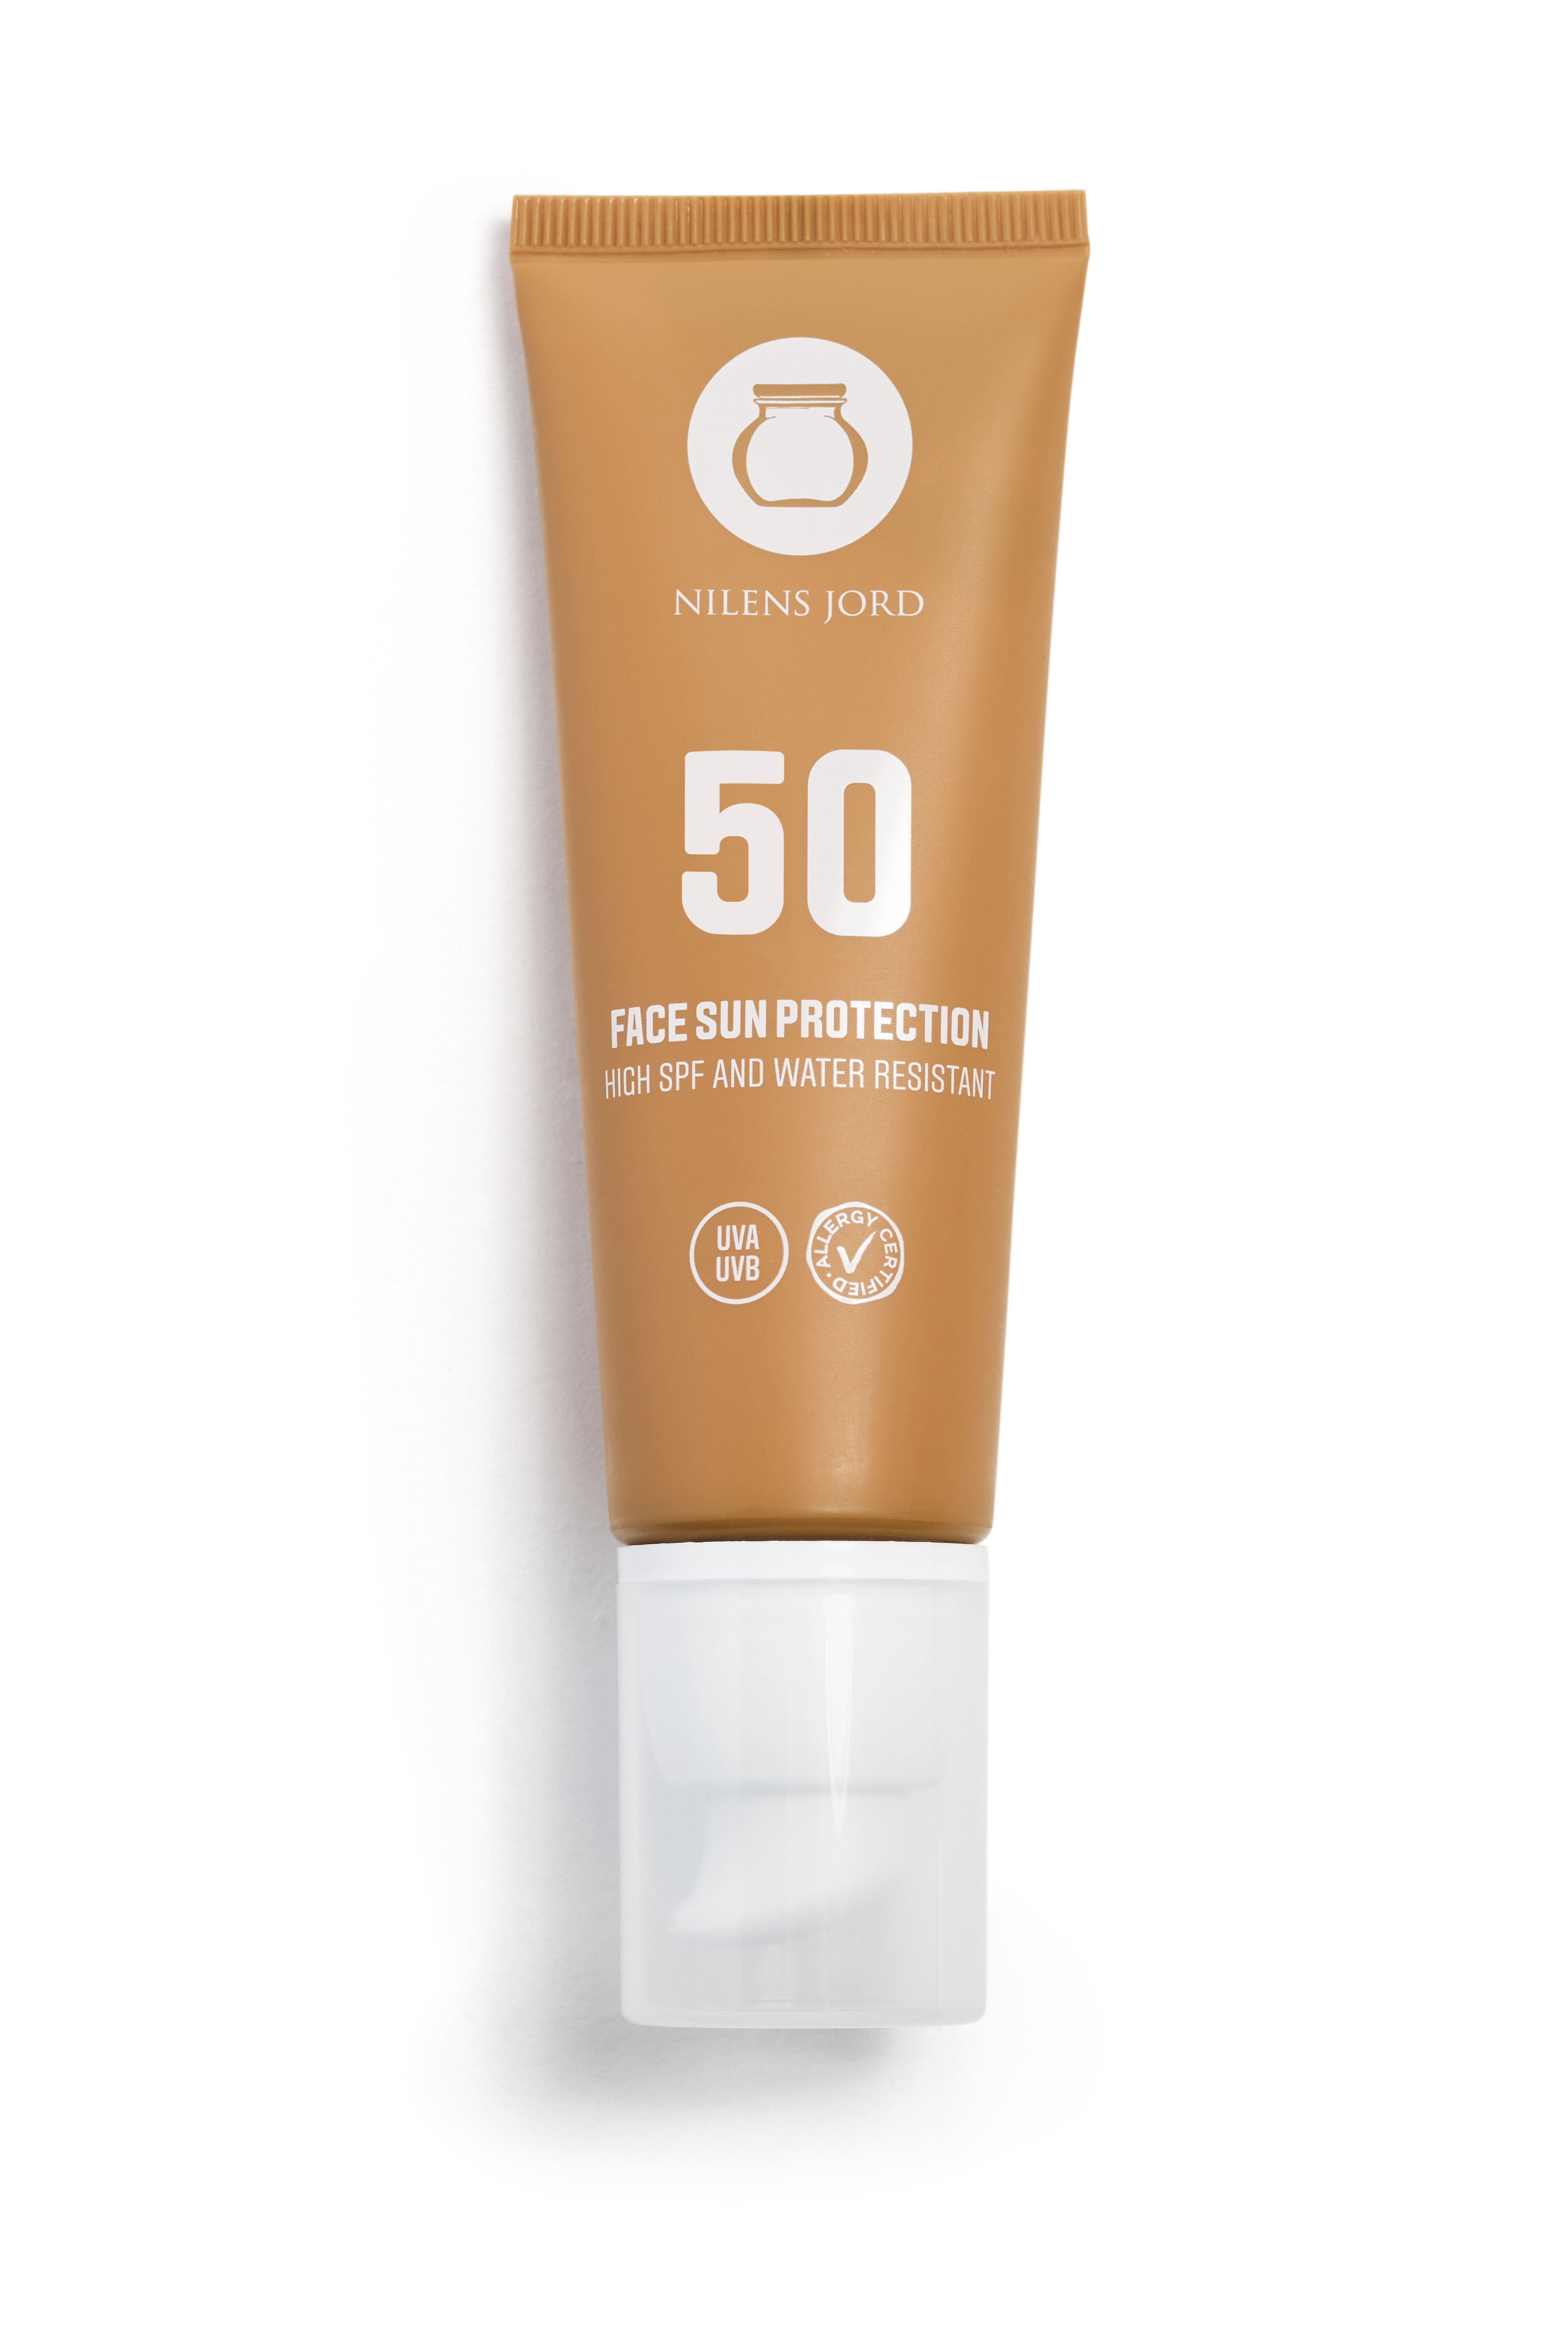  Face Sun Protection SPF 50